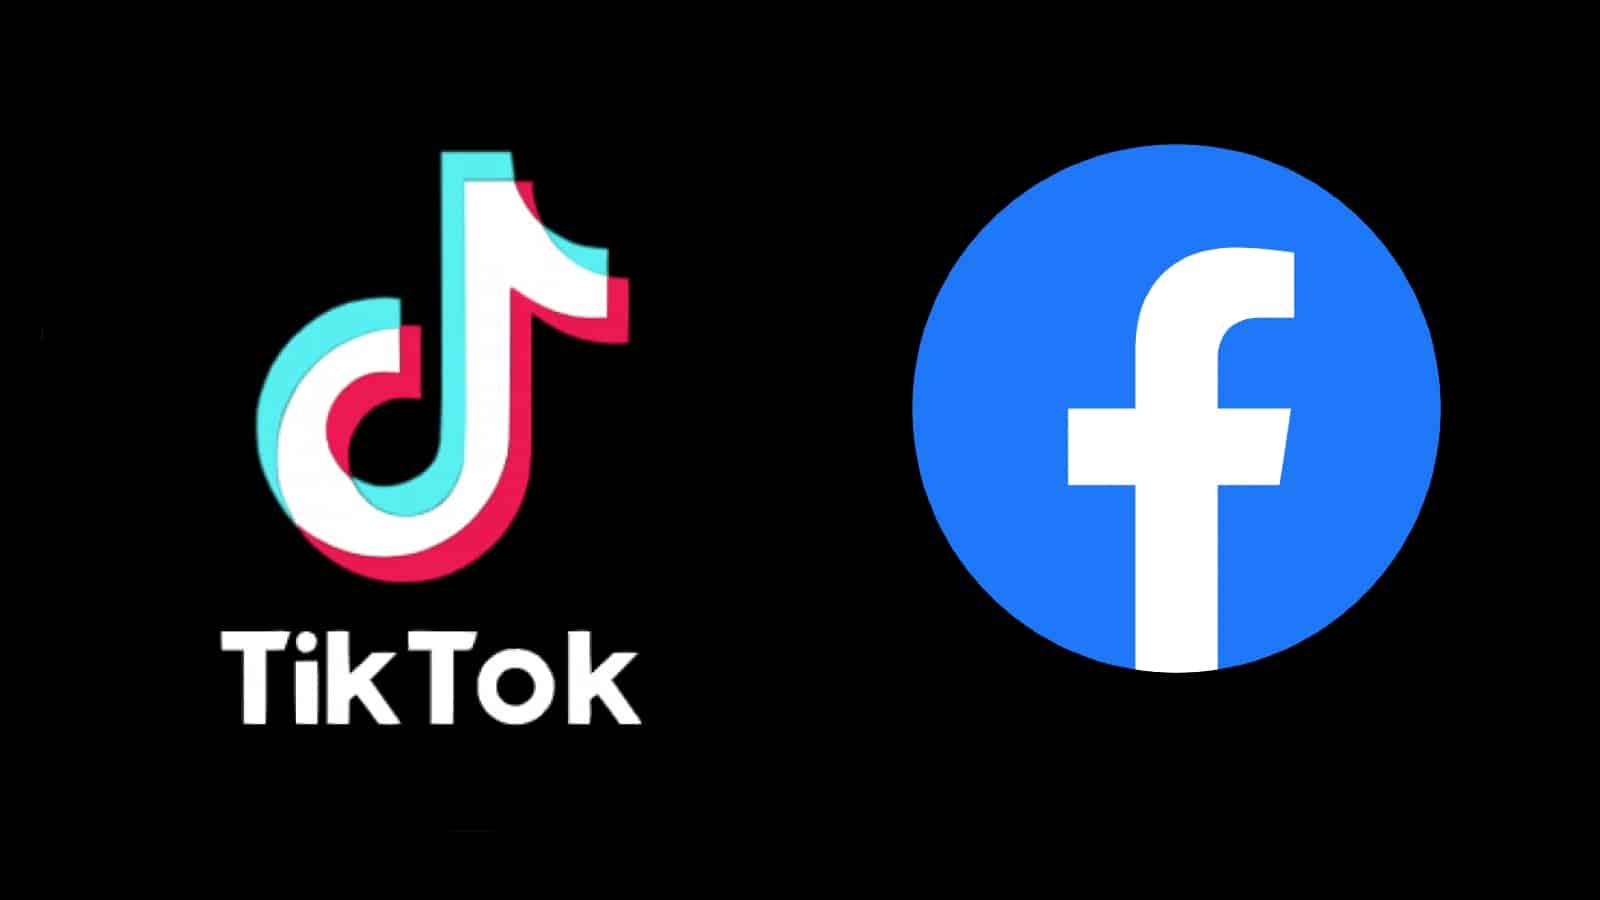 Facebook vs TikTok